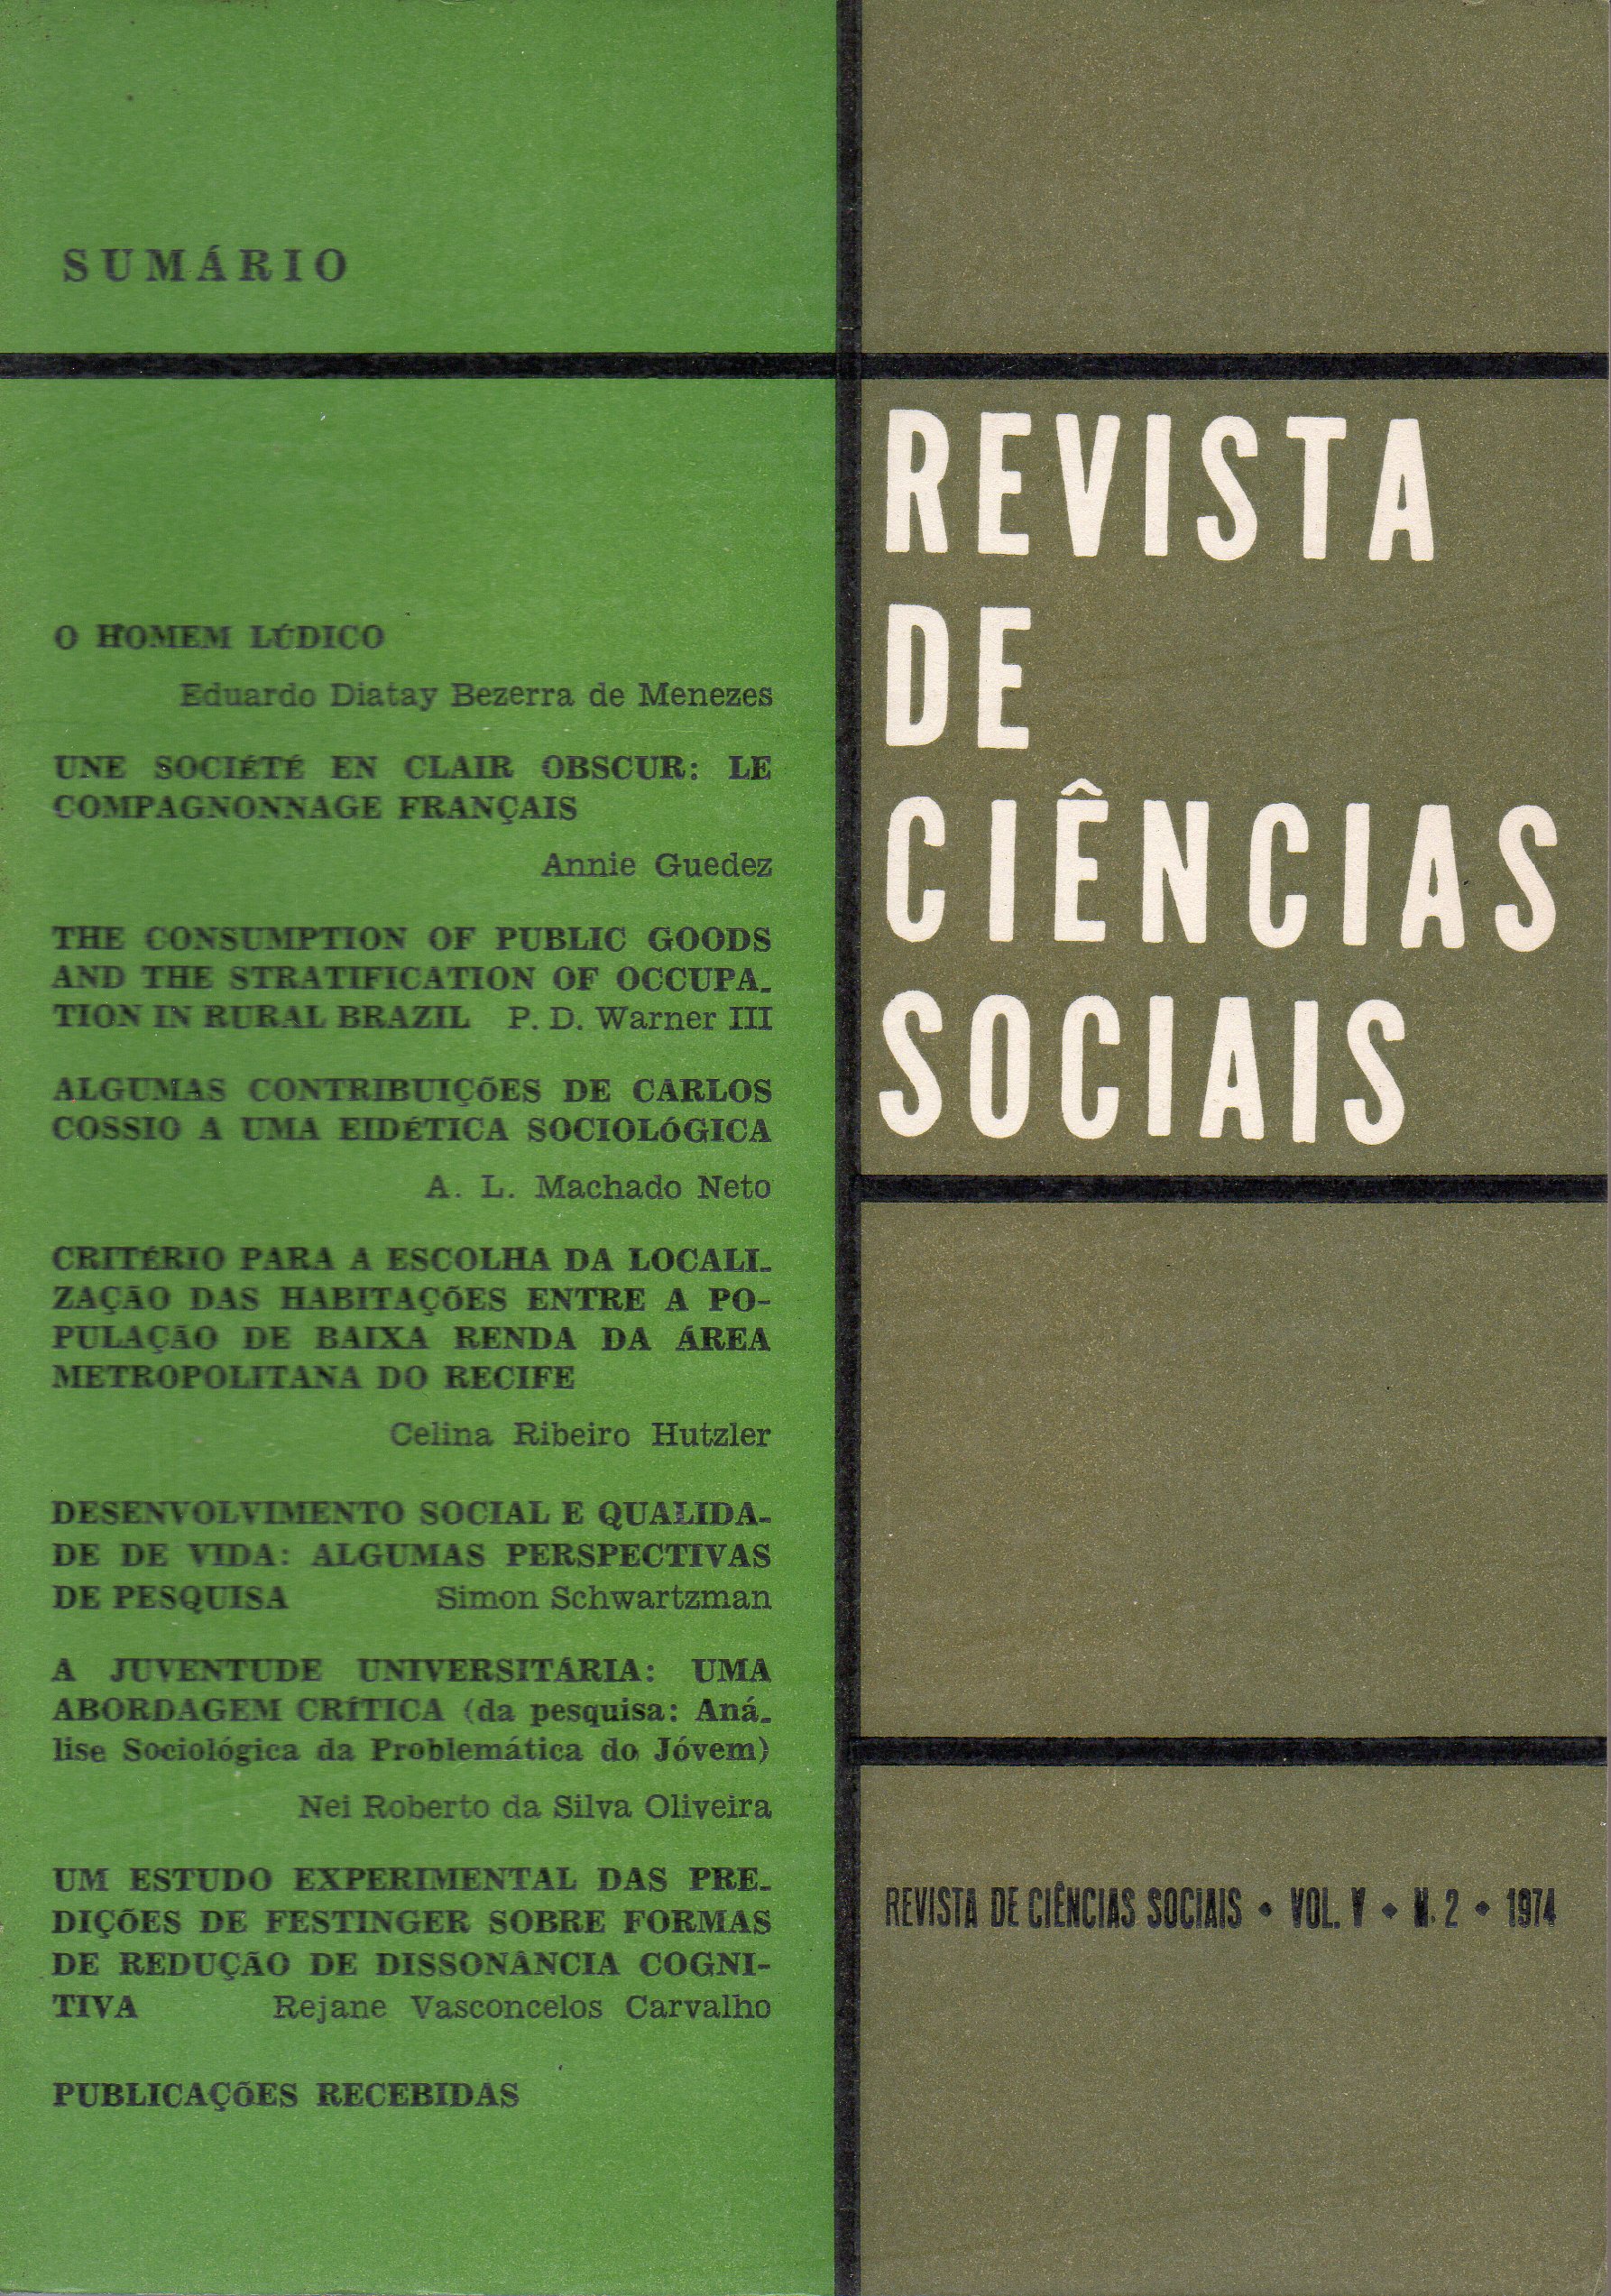 					Ver Vol. 5 Núm. 2 (1974): Revista de Ciências Sociais
				